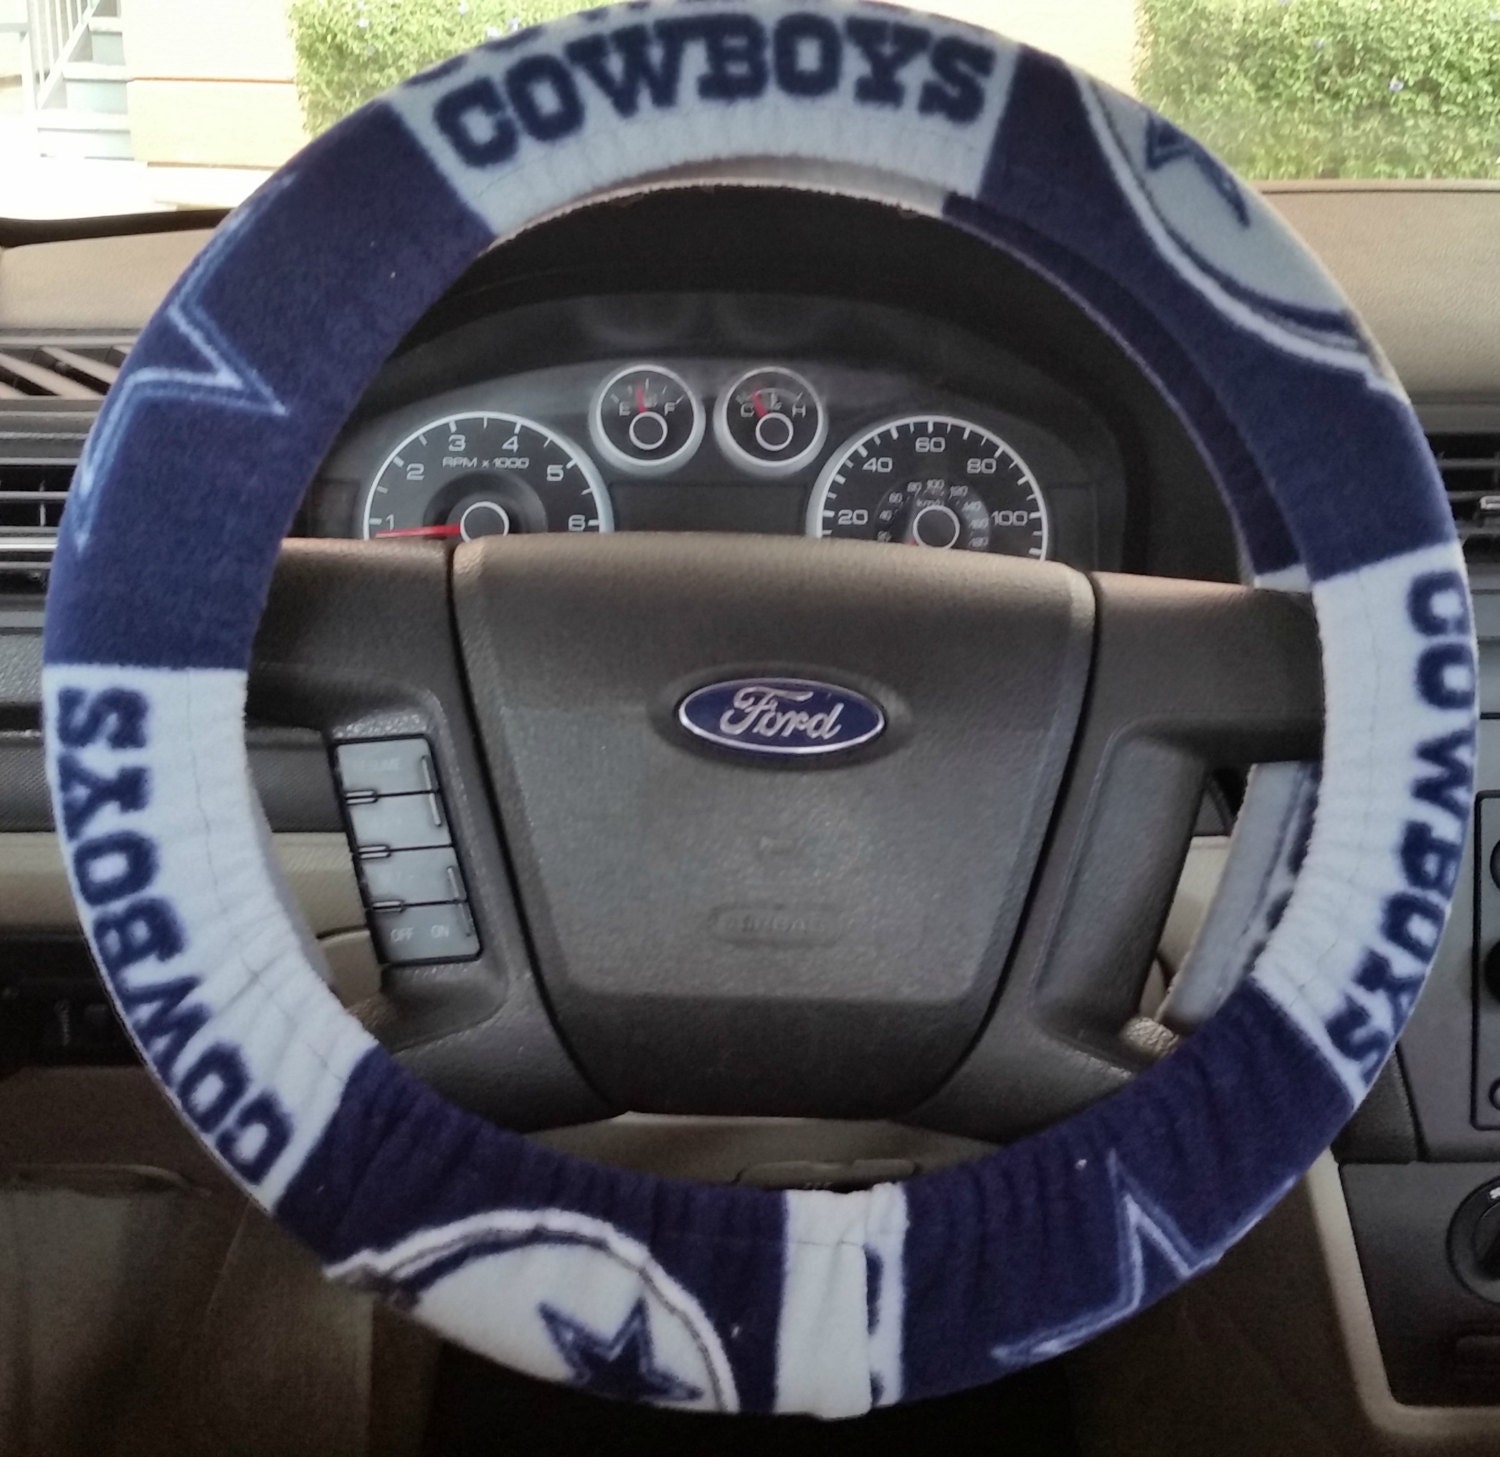 Cowboy steering wheel drivers